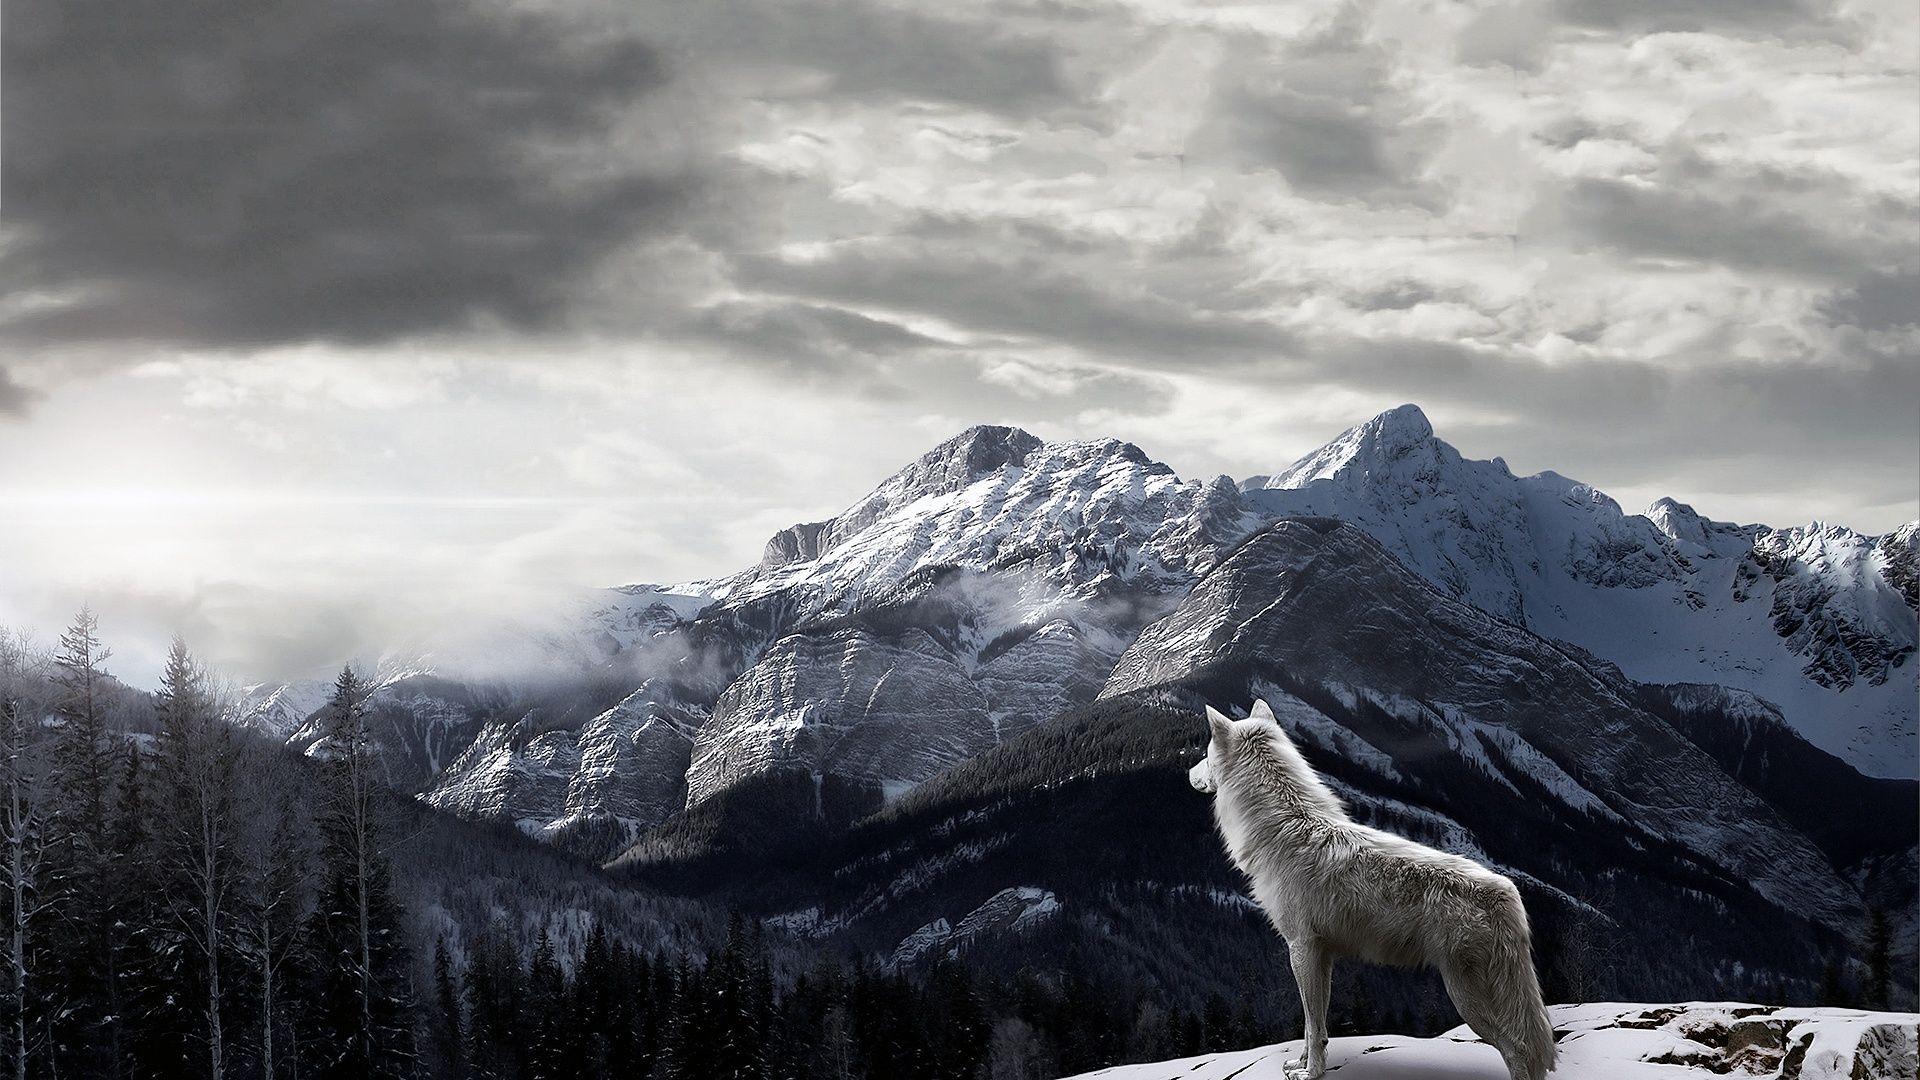 Wolf Background